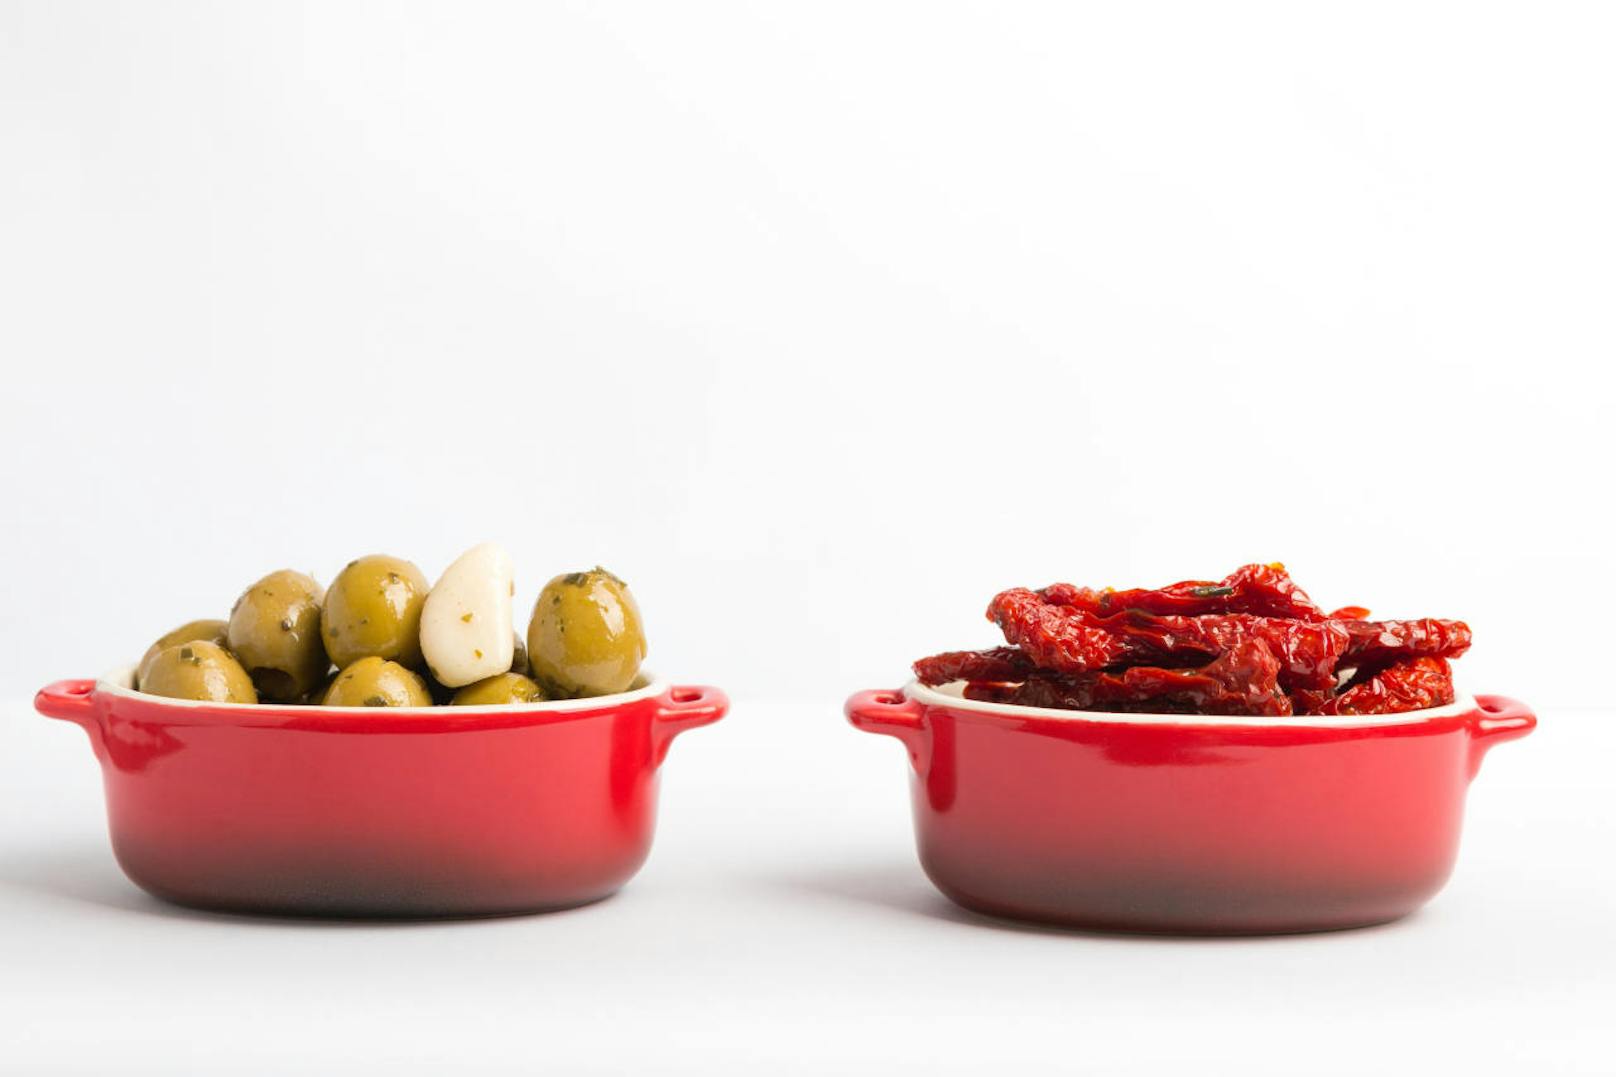 <b>Tomaten-Oliven-Aufstrich</b>
Aufs Brot oder zusammen mit Grissini - dieser Aufstrich kommt garantiert gut an.